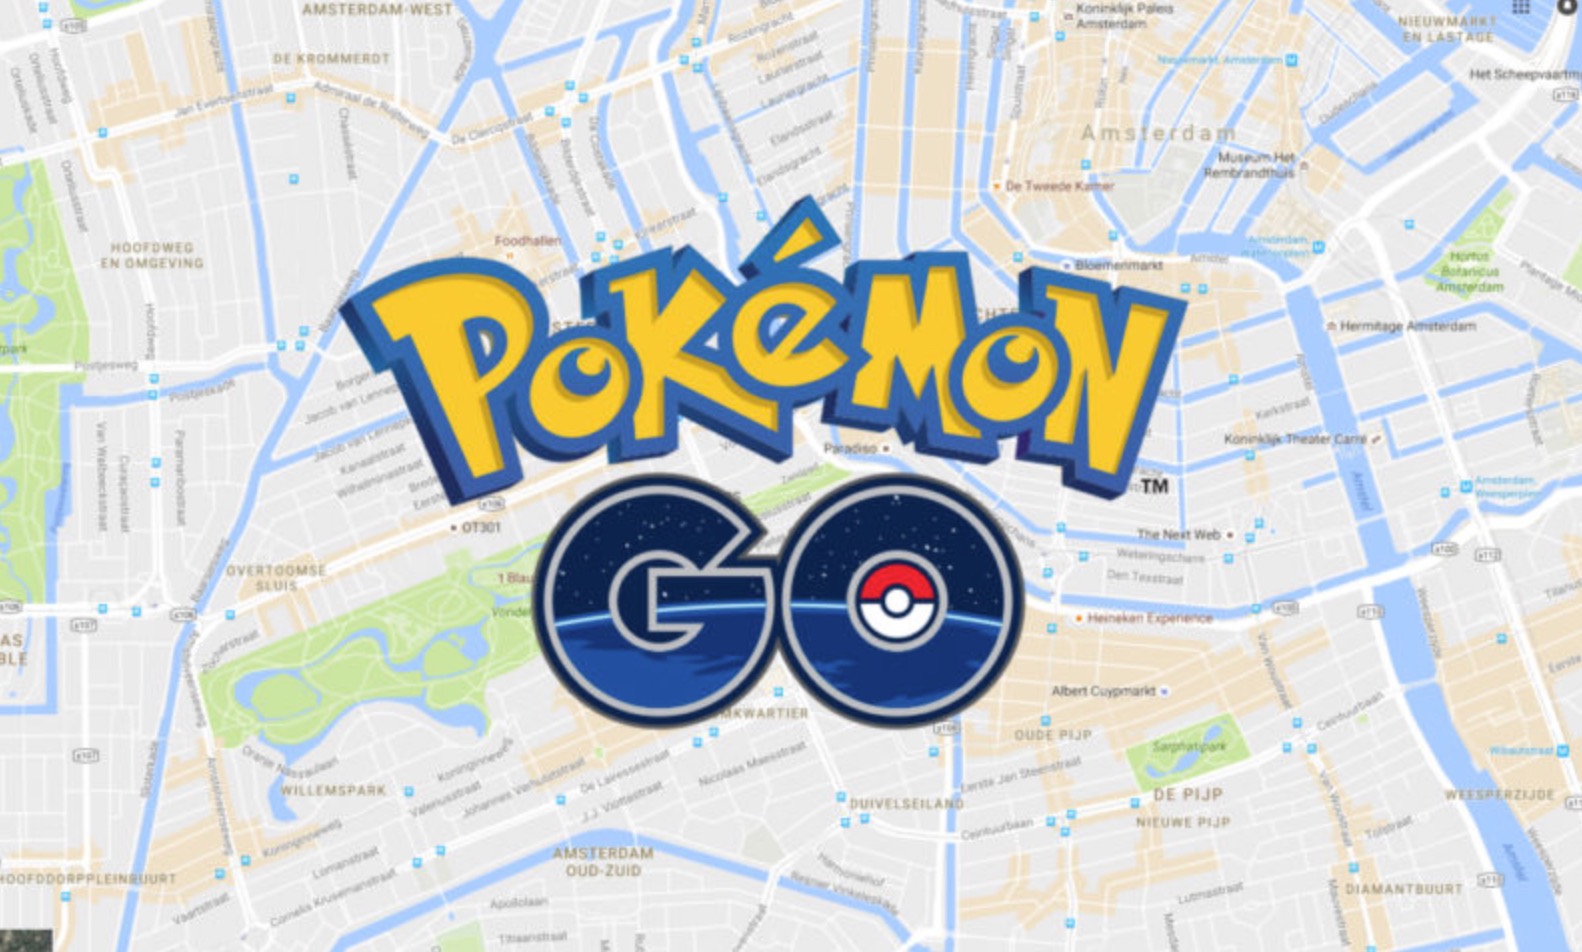 Google Maps opzione per Pokemon Go